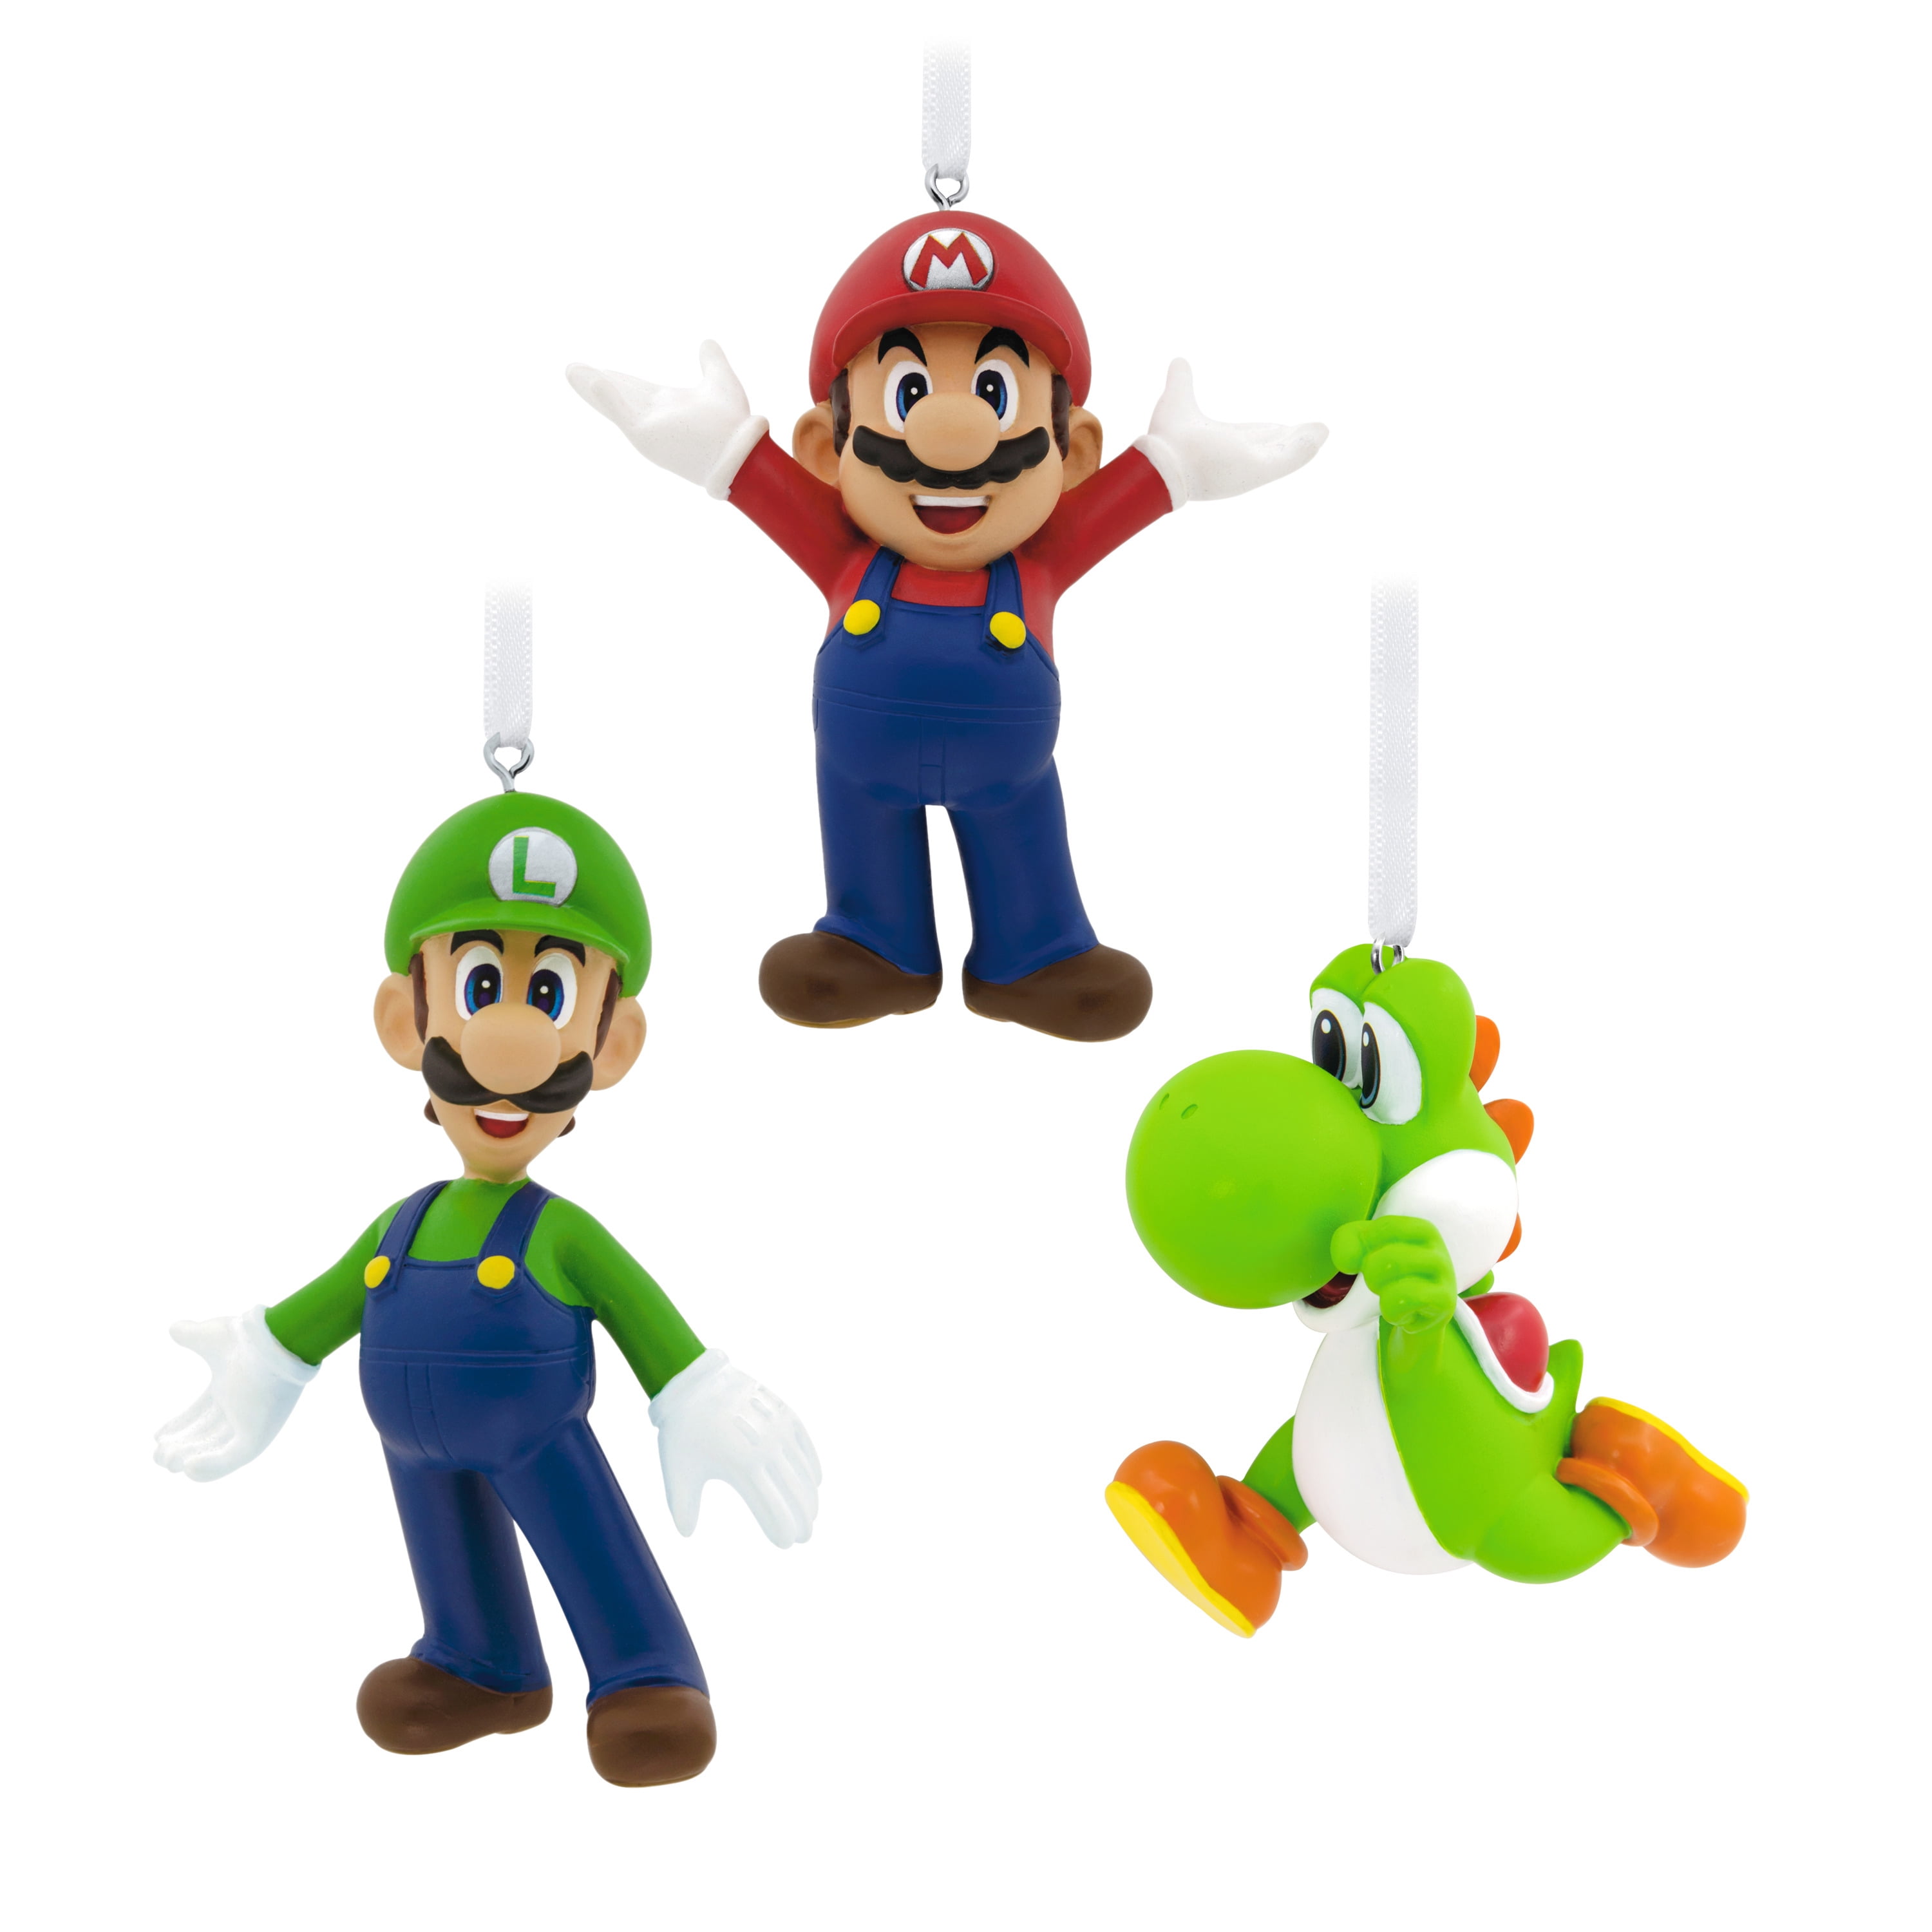 Hallmark Resin Nintendo Super Mario Holiday Figurine Ornaments, 3 Count ...